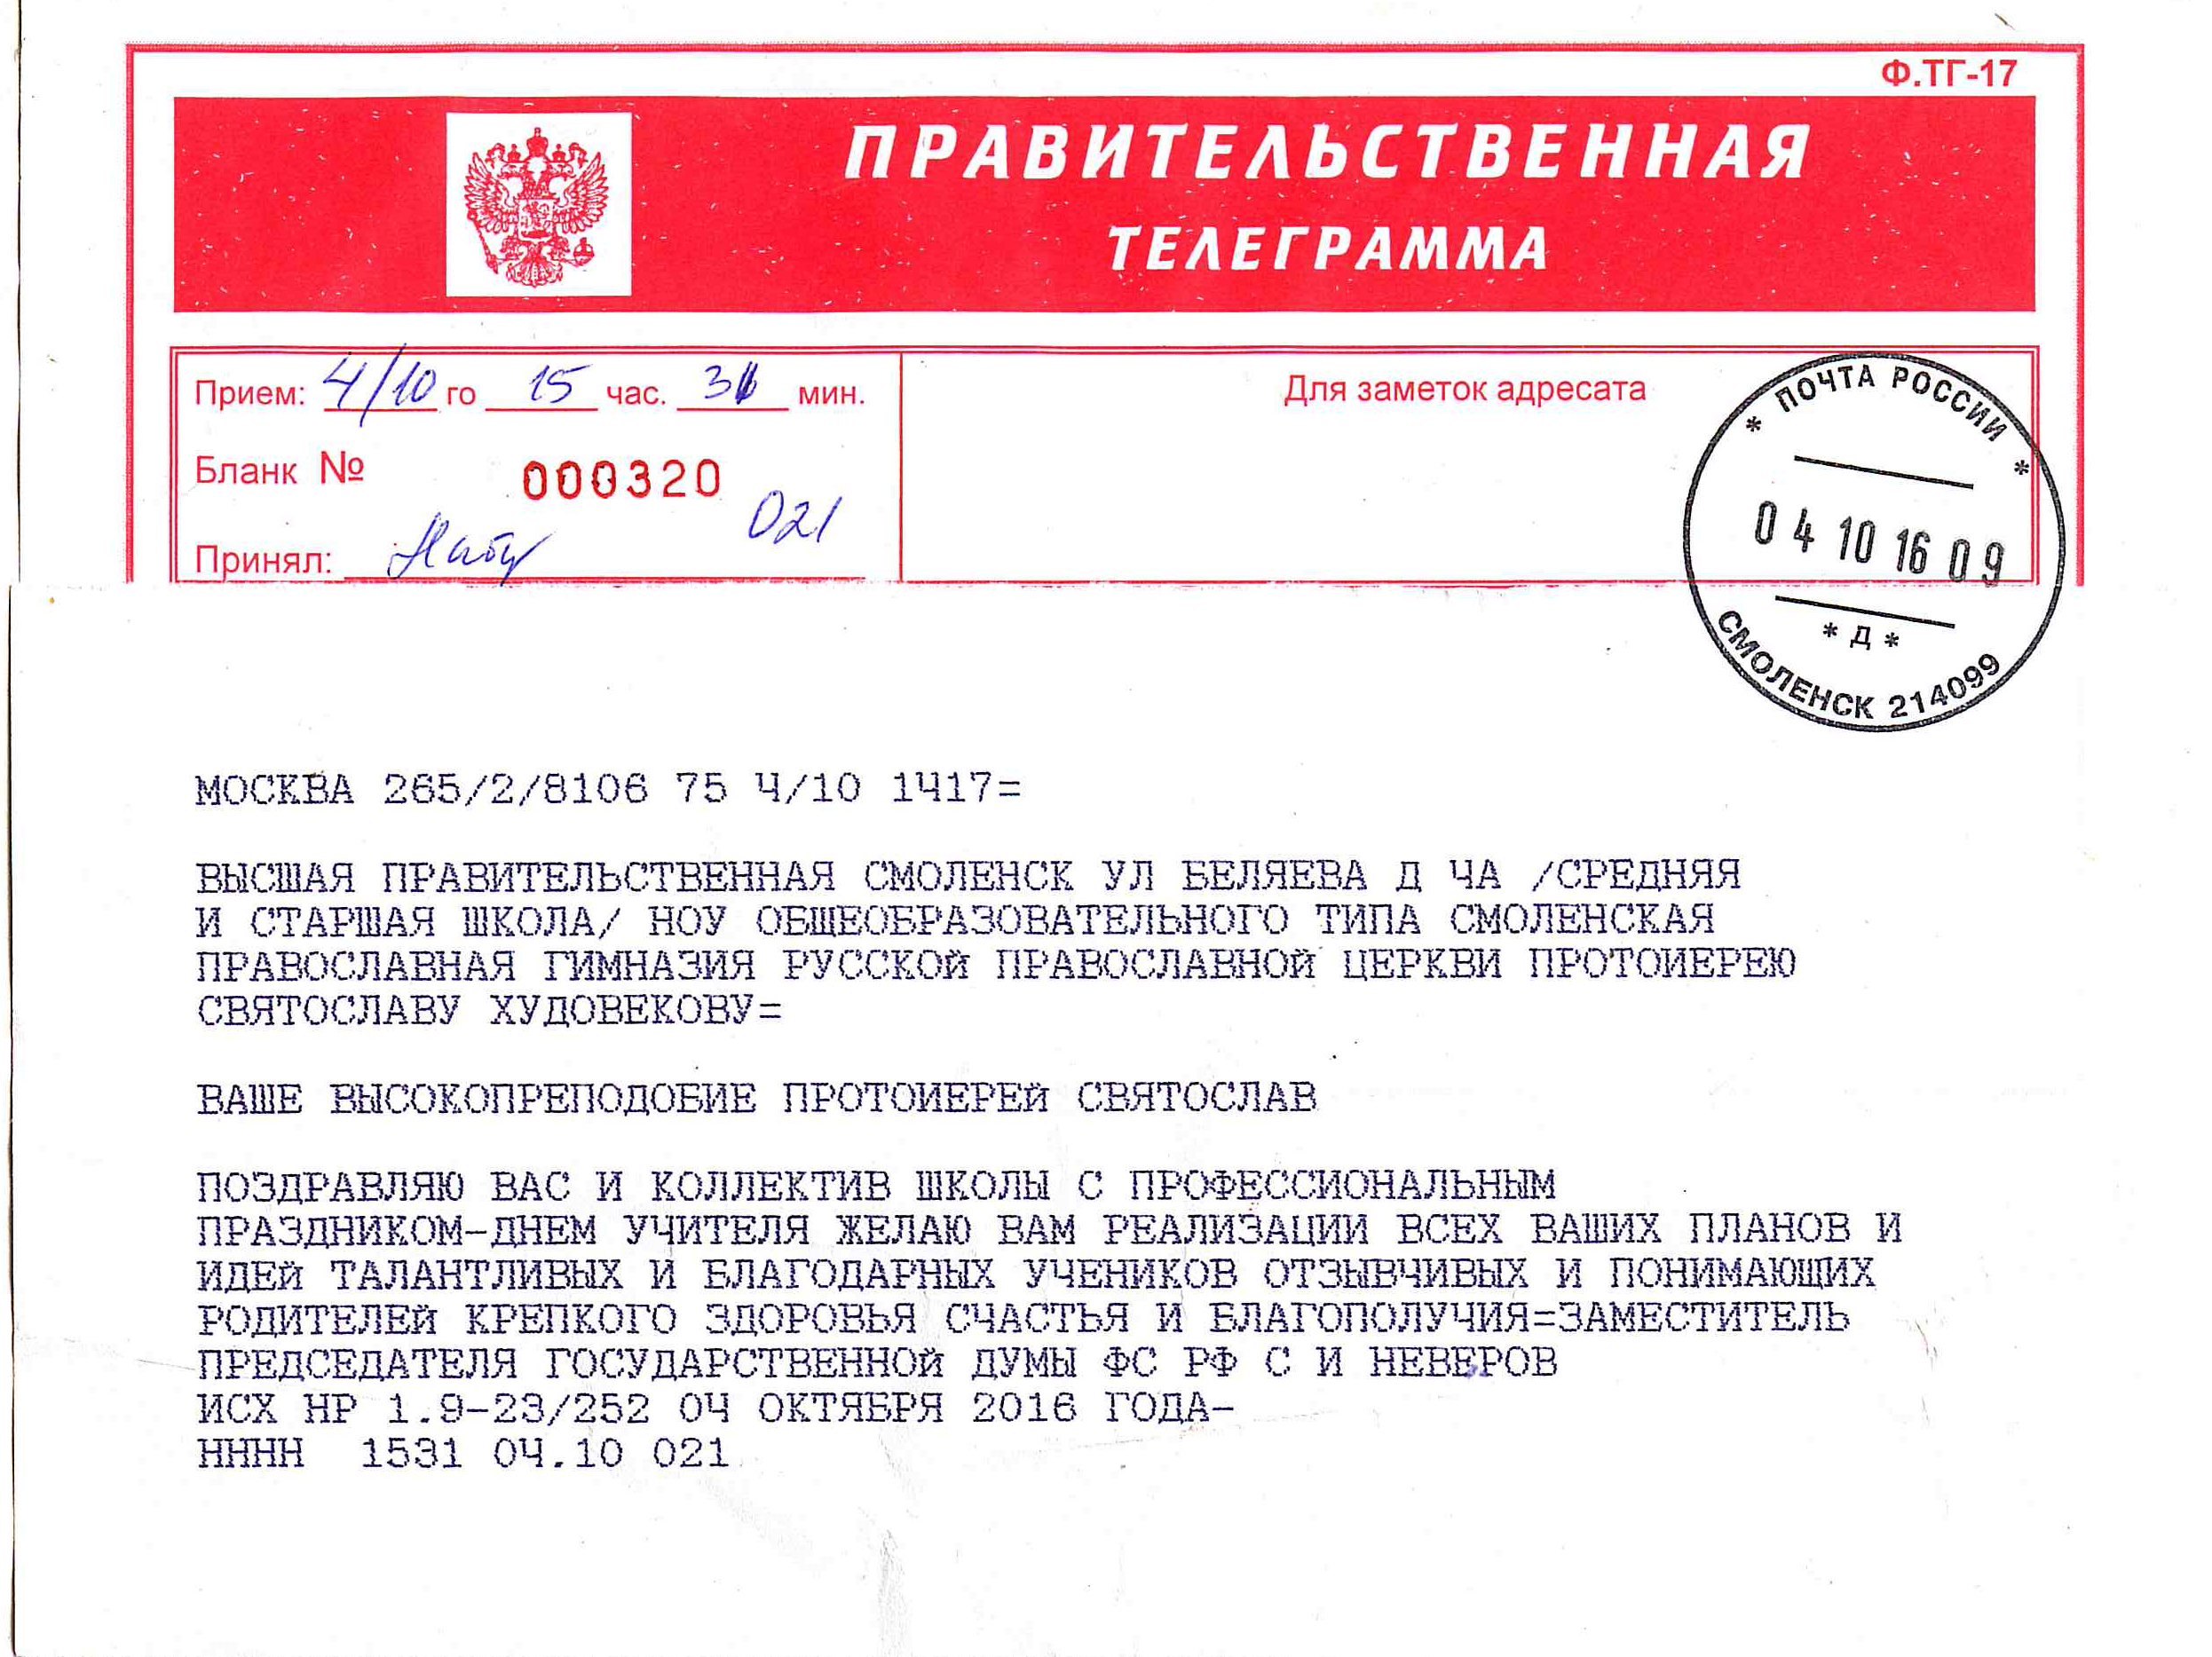 Как писать телеграмму русский язык фото 106